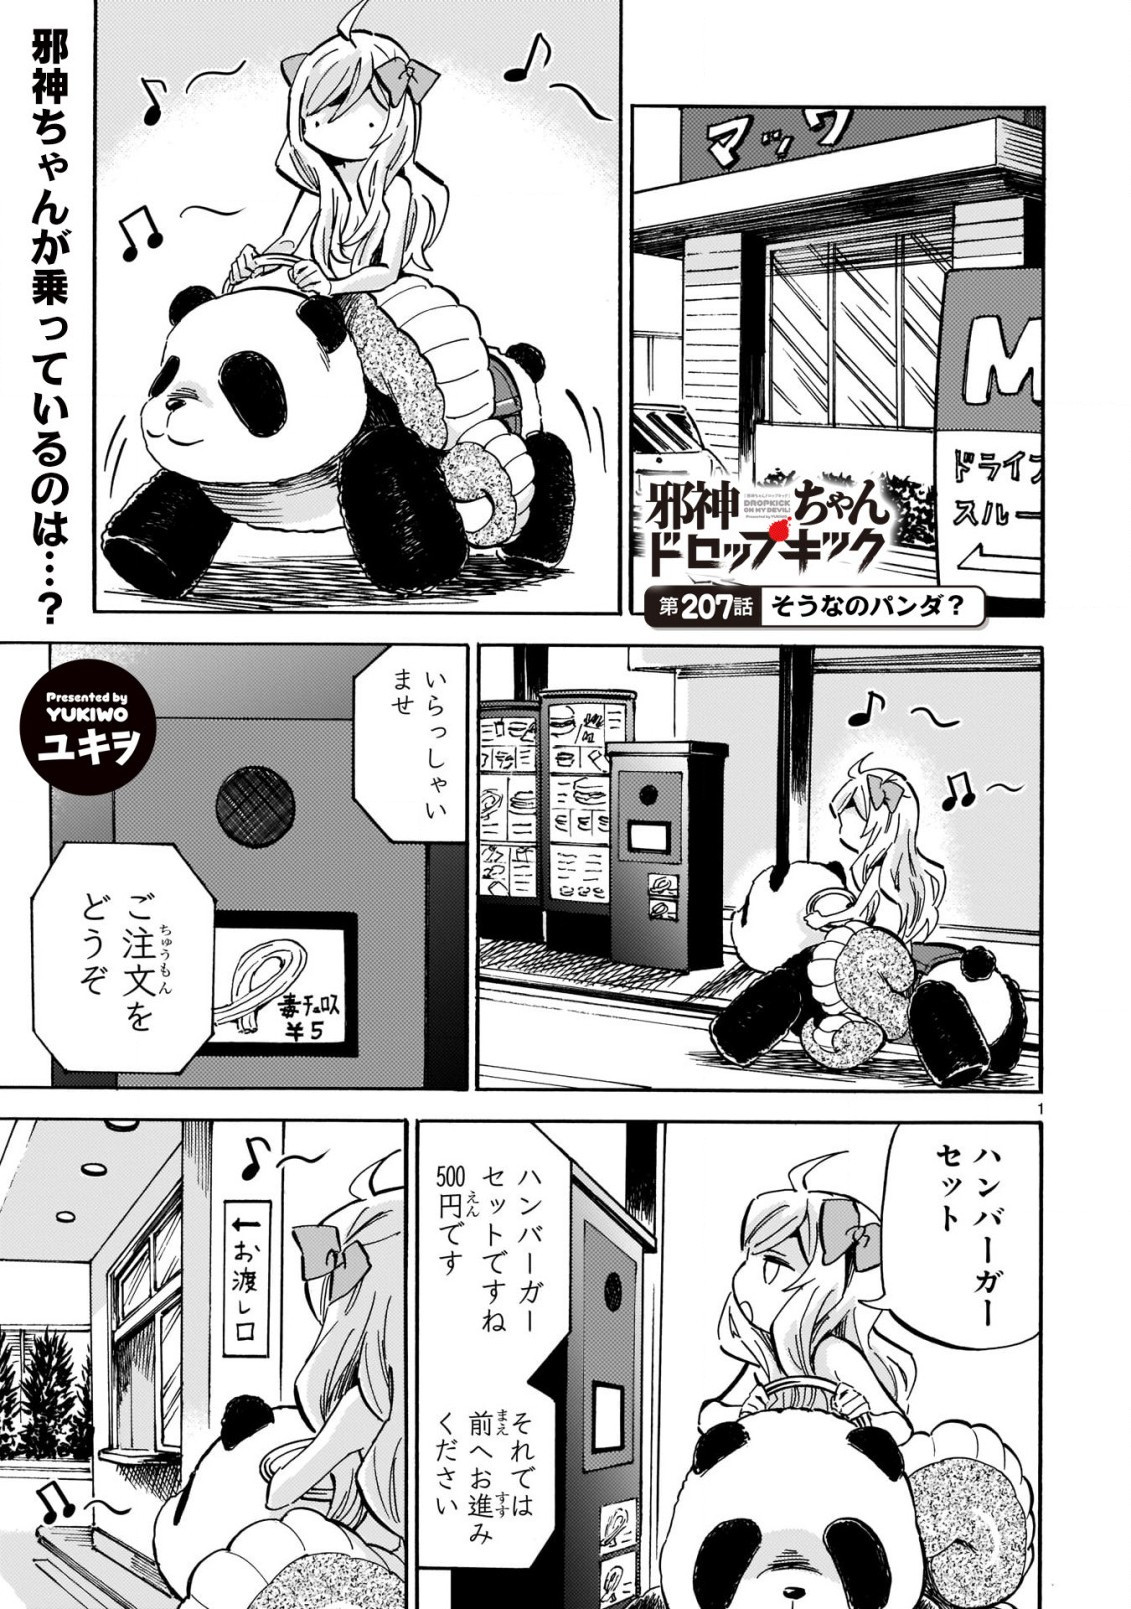 Jashin-chan Dropkick - Chapter 207 - Page 1